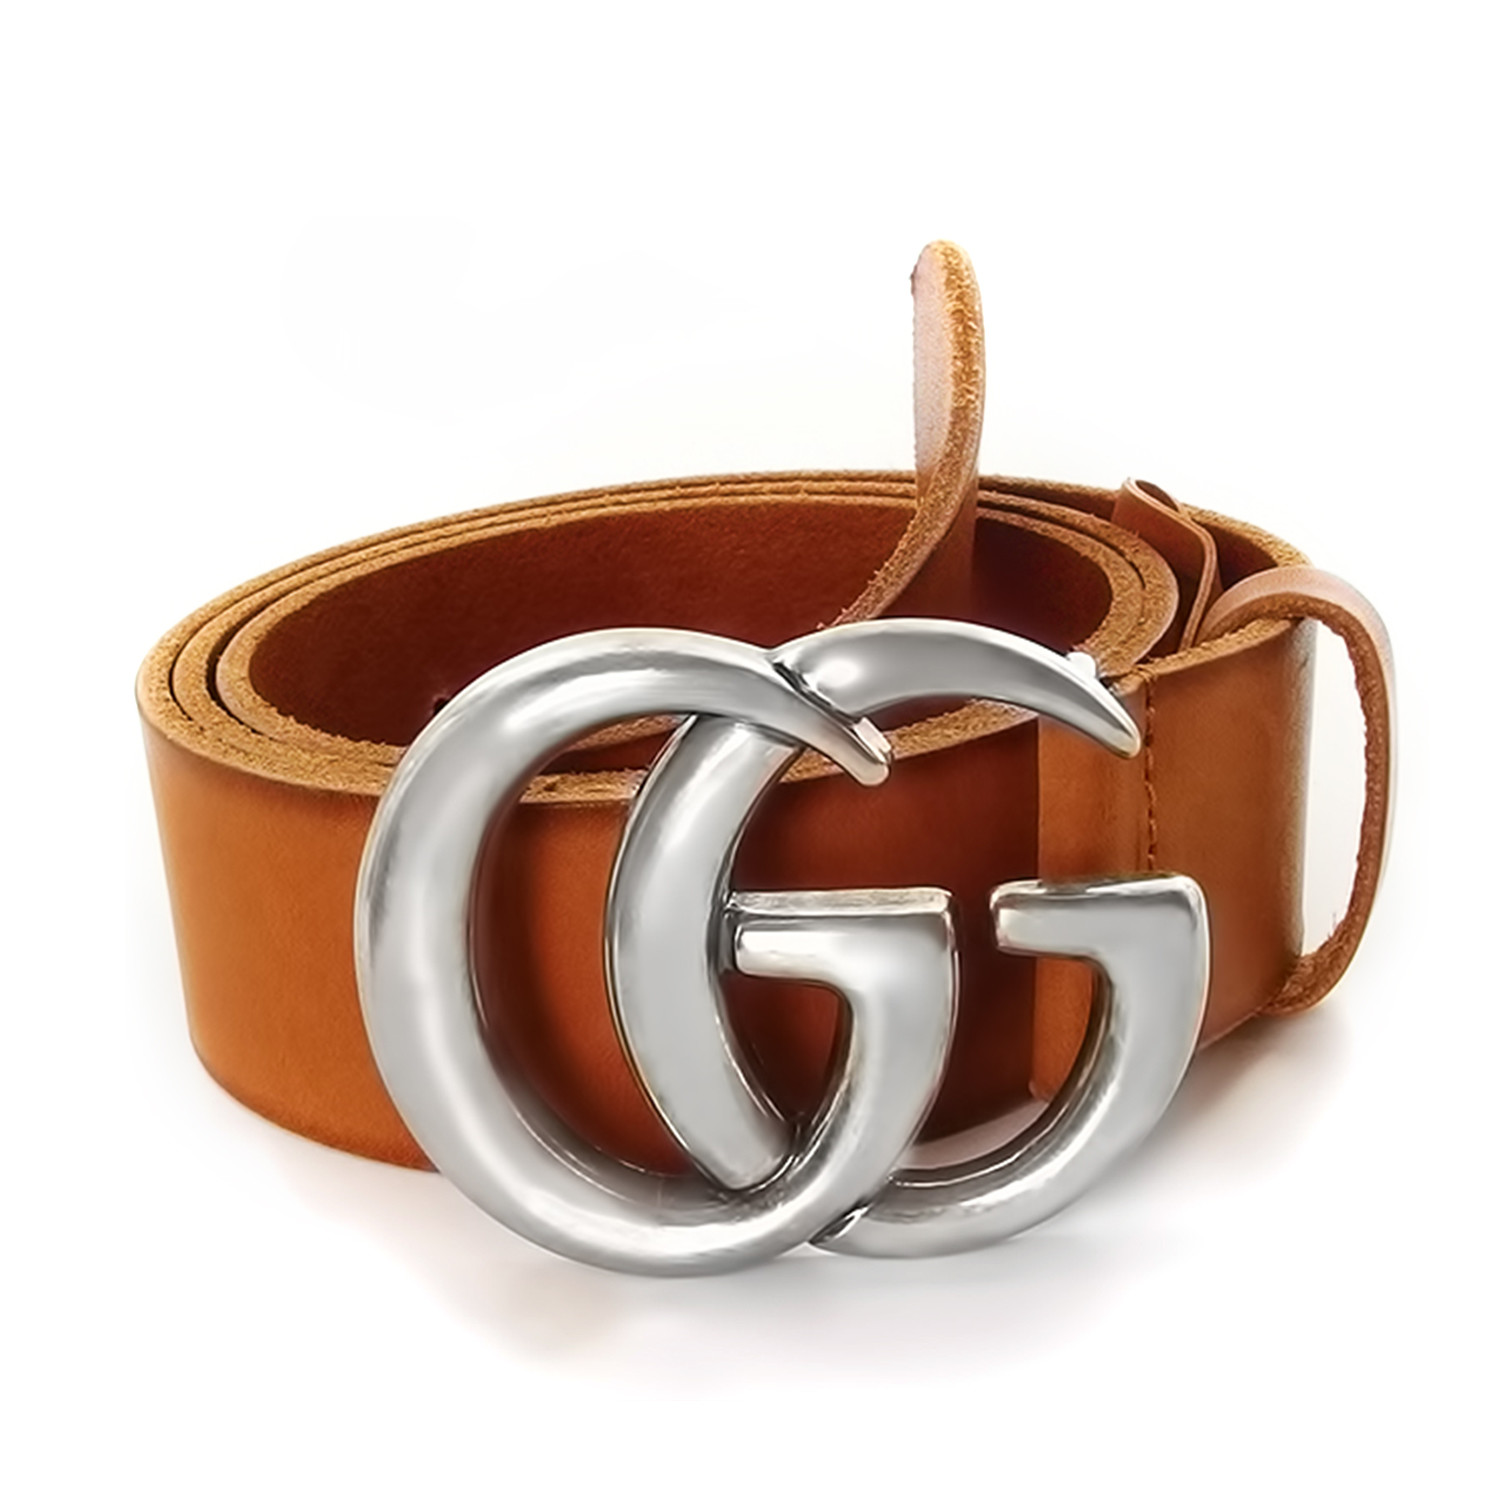 gg belt brown